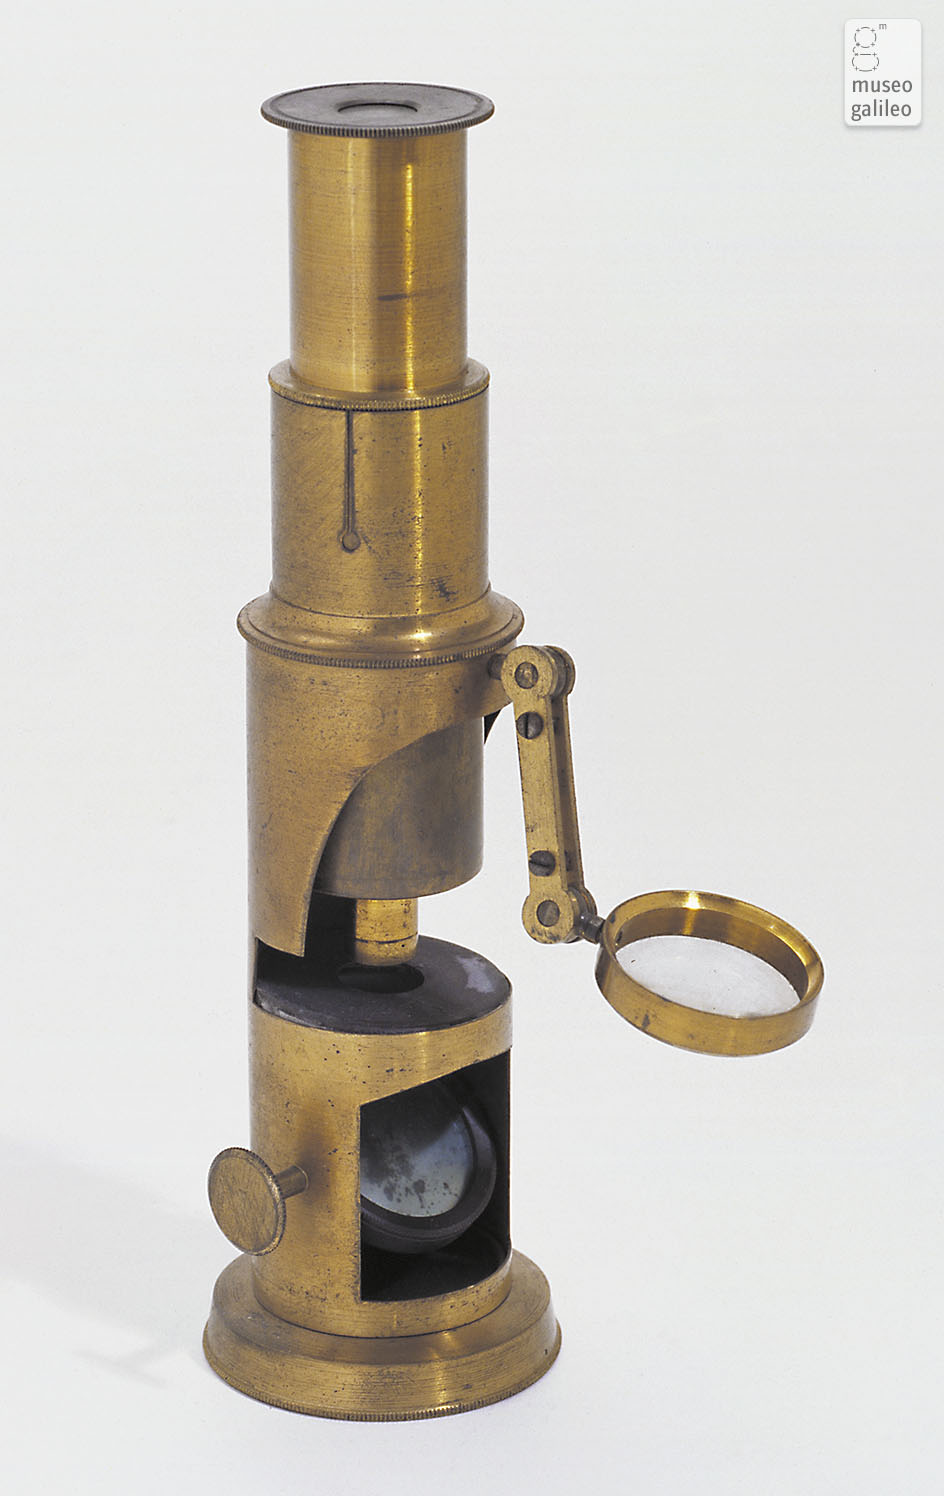 Compound microscope (Inv. 3172)